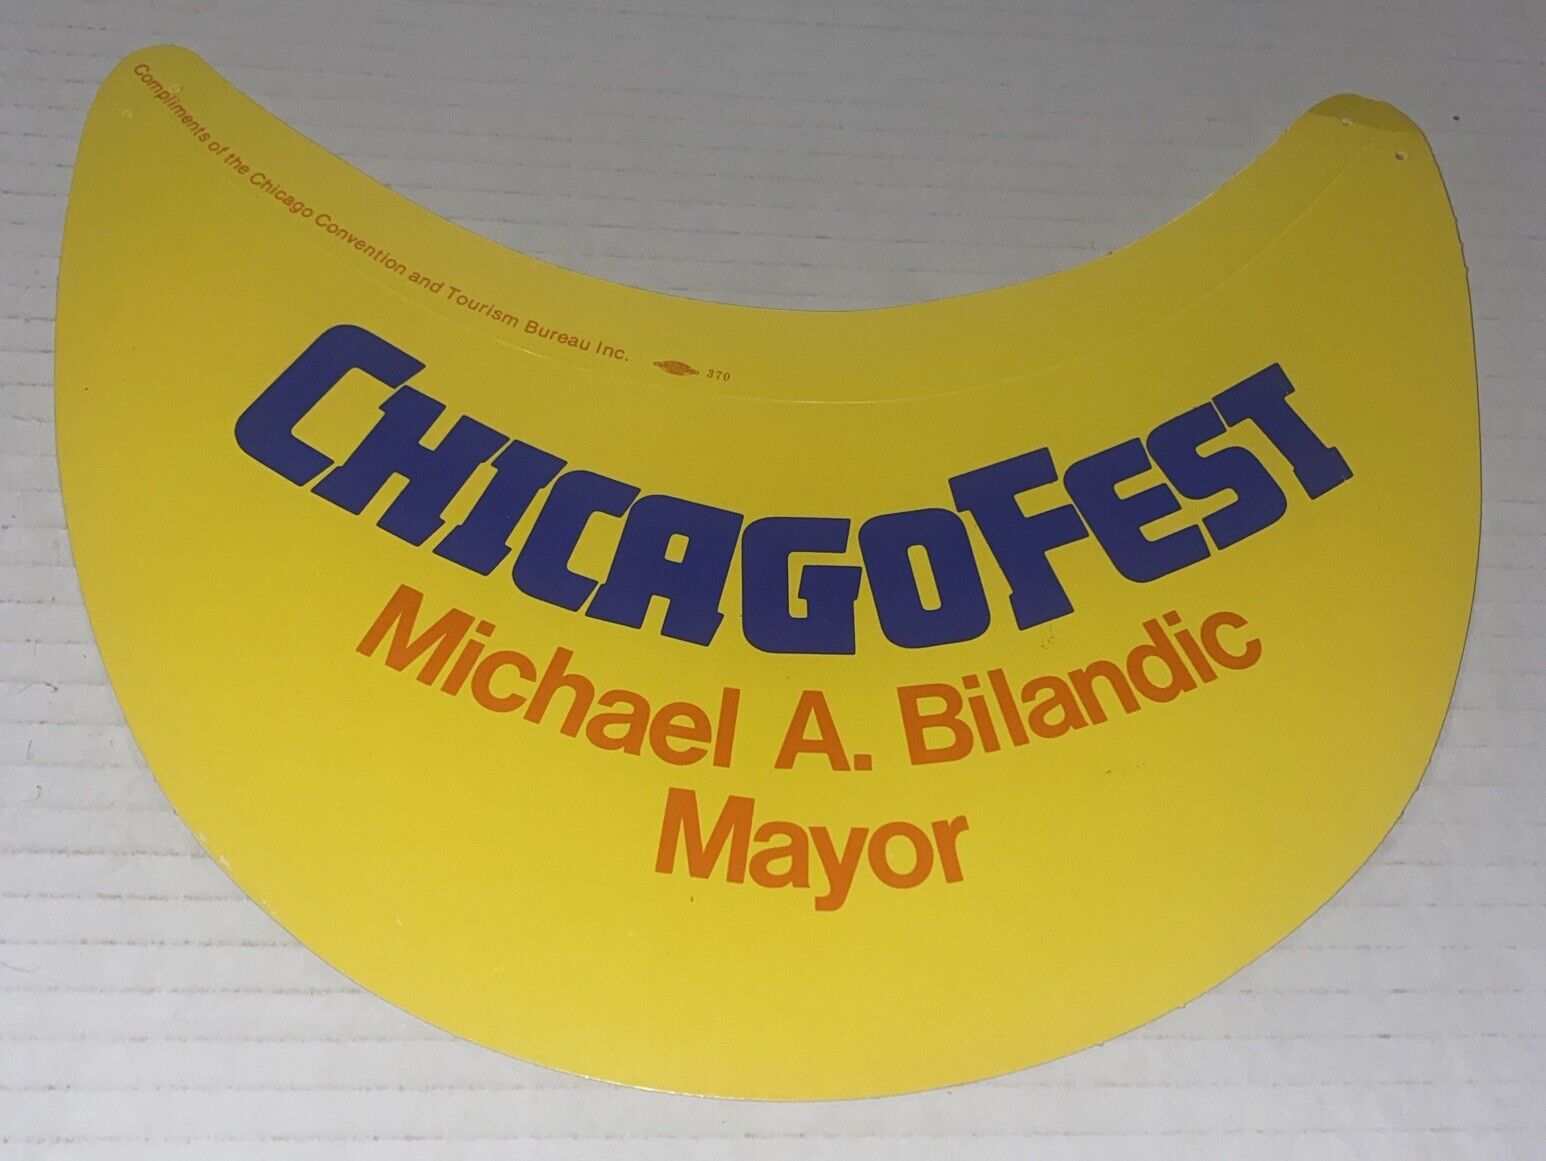 VTG 1970s ChicagoFest Promo Visor Bilandic Chicago Festival Souvenir Taste Union